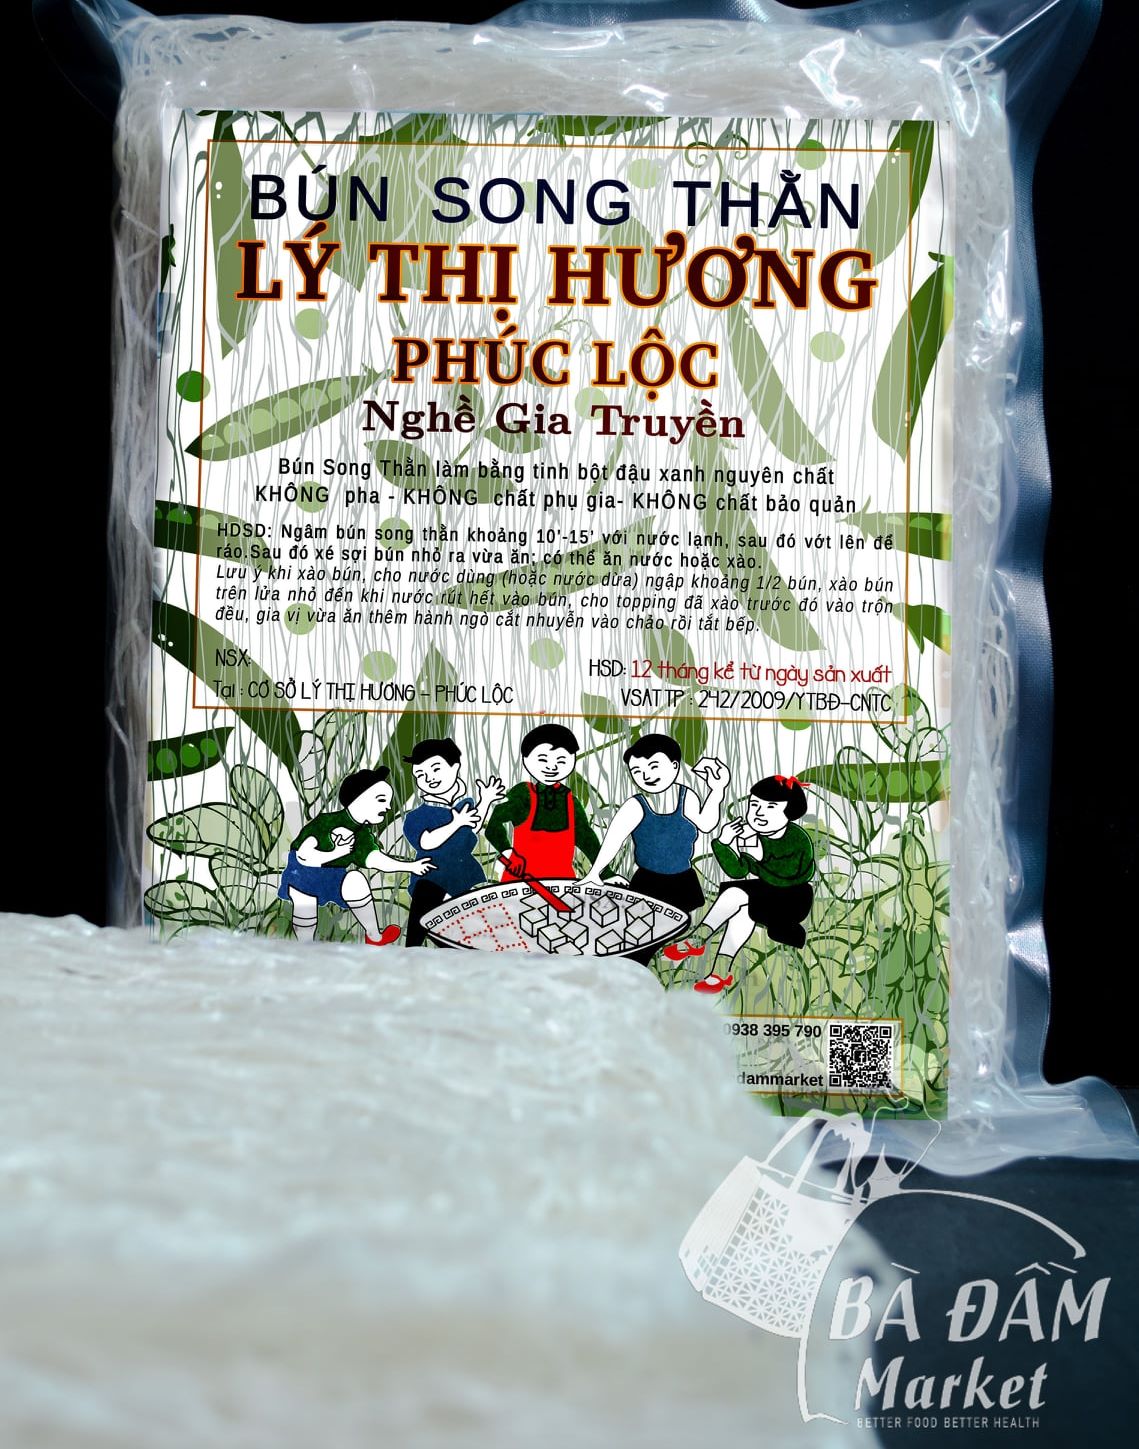 500gr Bún song thằn tinh bột đậu xanh Lý Thị Hương đặc sản Bình Định Có